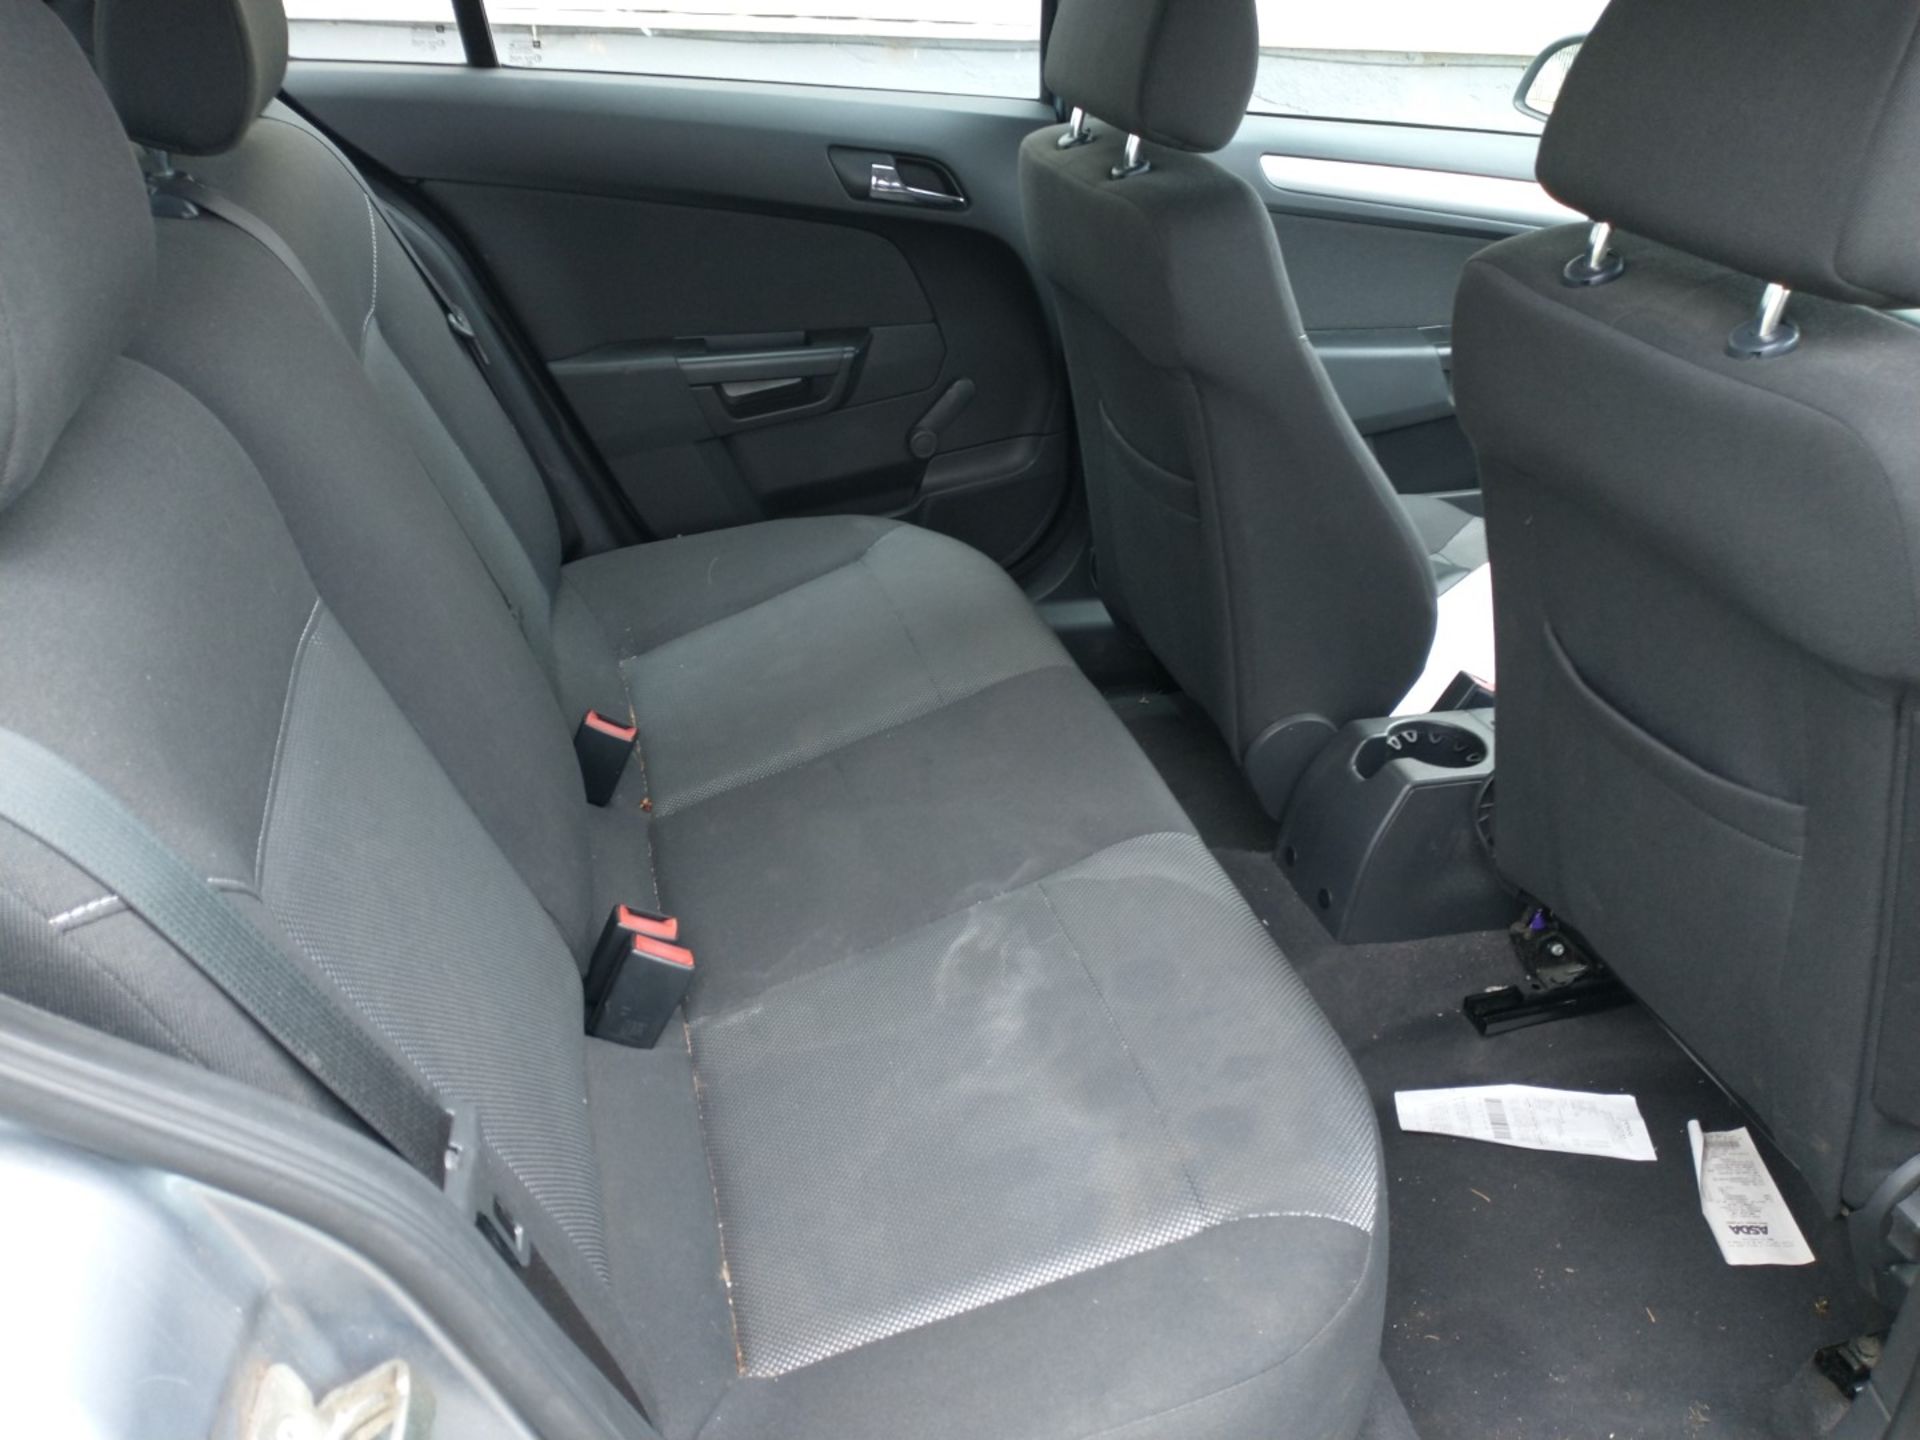 2010 Vauxhall Astra Active 5dr Hatchback 1.4 Petrol - CL505 - Ref: VVS0014 - NO VAT ON THE HAMMER - - Image 2 of 18